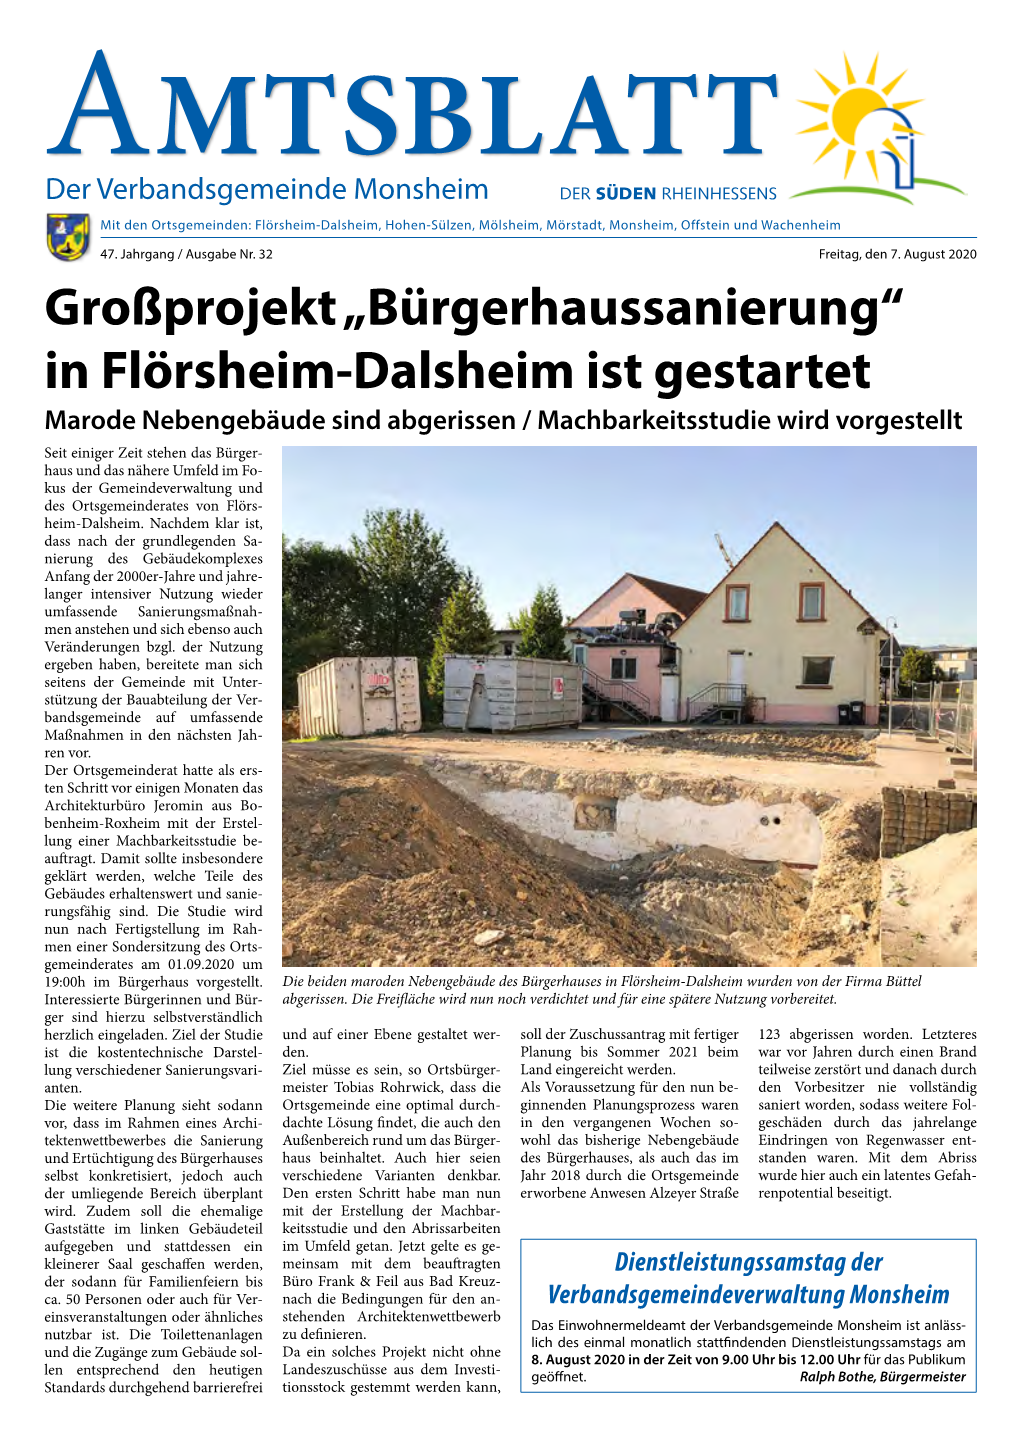 In Flörsheim-Dalsheim Ist Gestartet